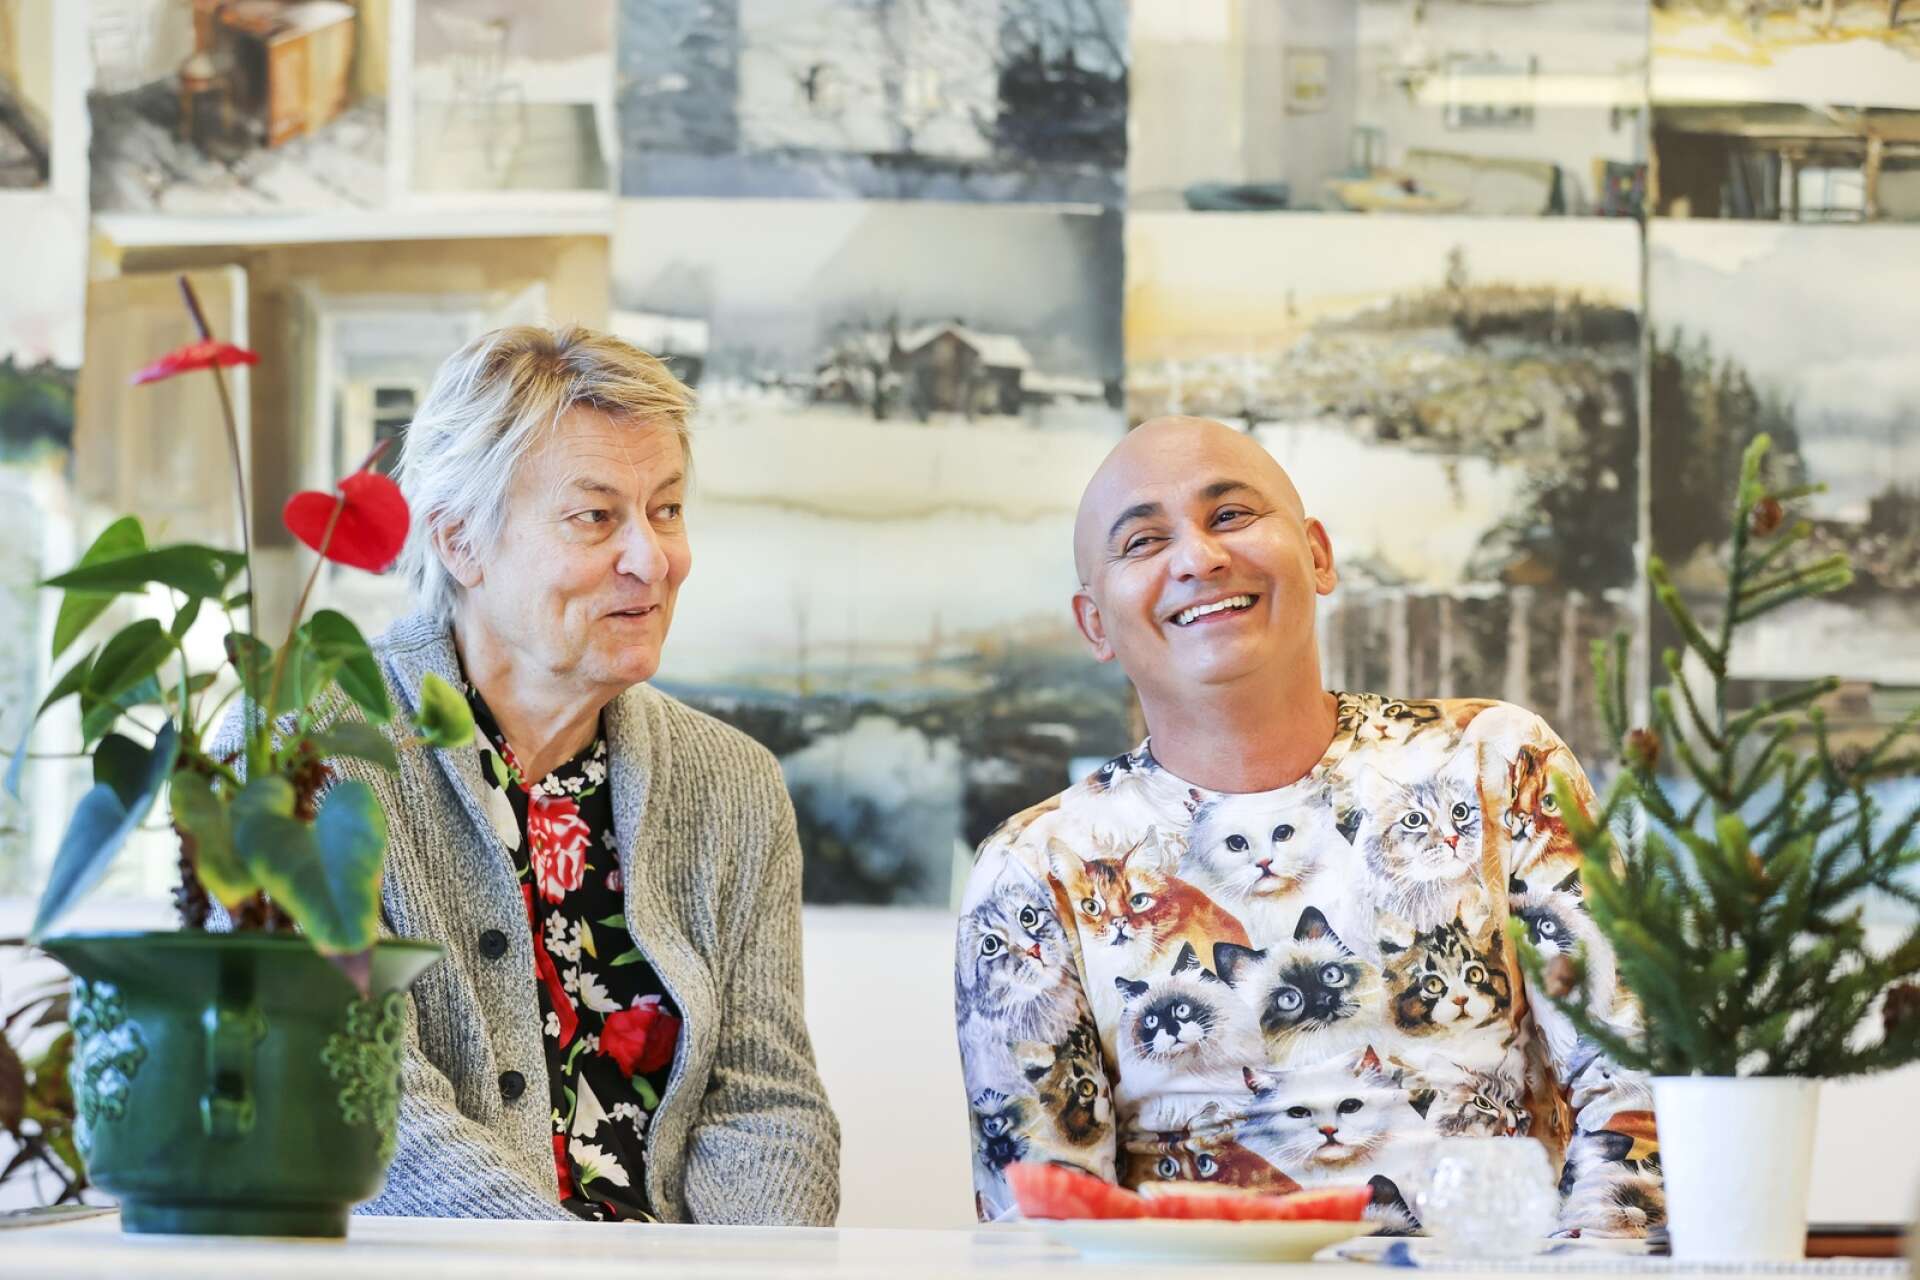 Brasilien och Sverige möts hos konstnären Lars Lerin och hans man Manoel &quot;Junior&quot; Marques Lerin. I nya tv-programmet är det en mycket speciell del av det svenska kulturarvet som chockar Junior.